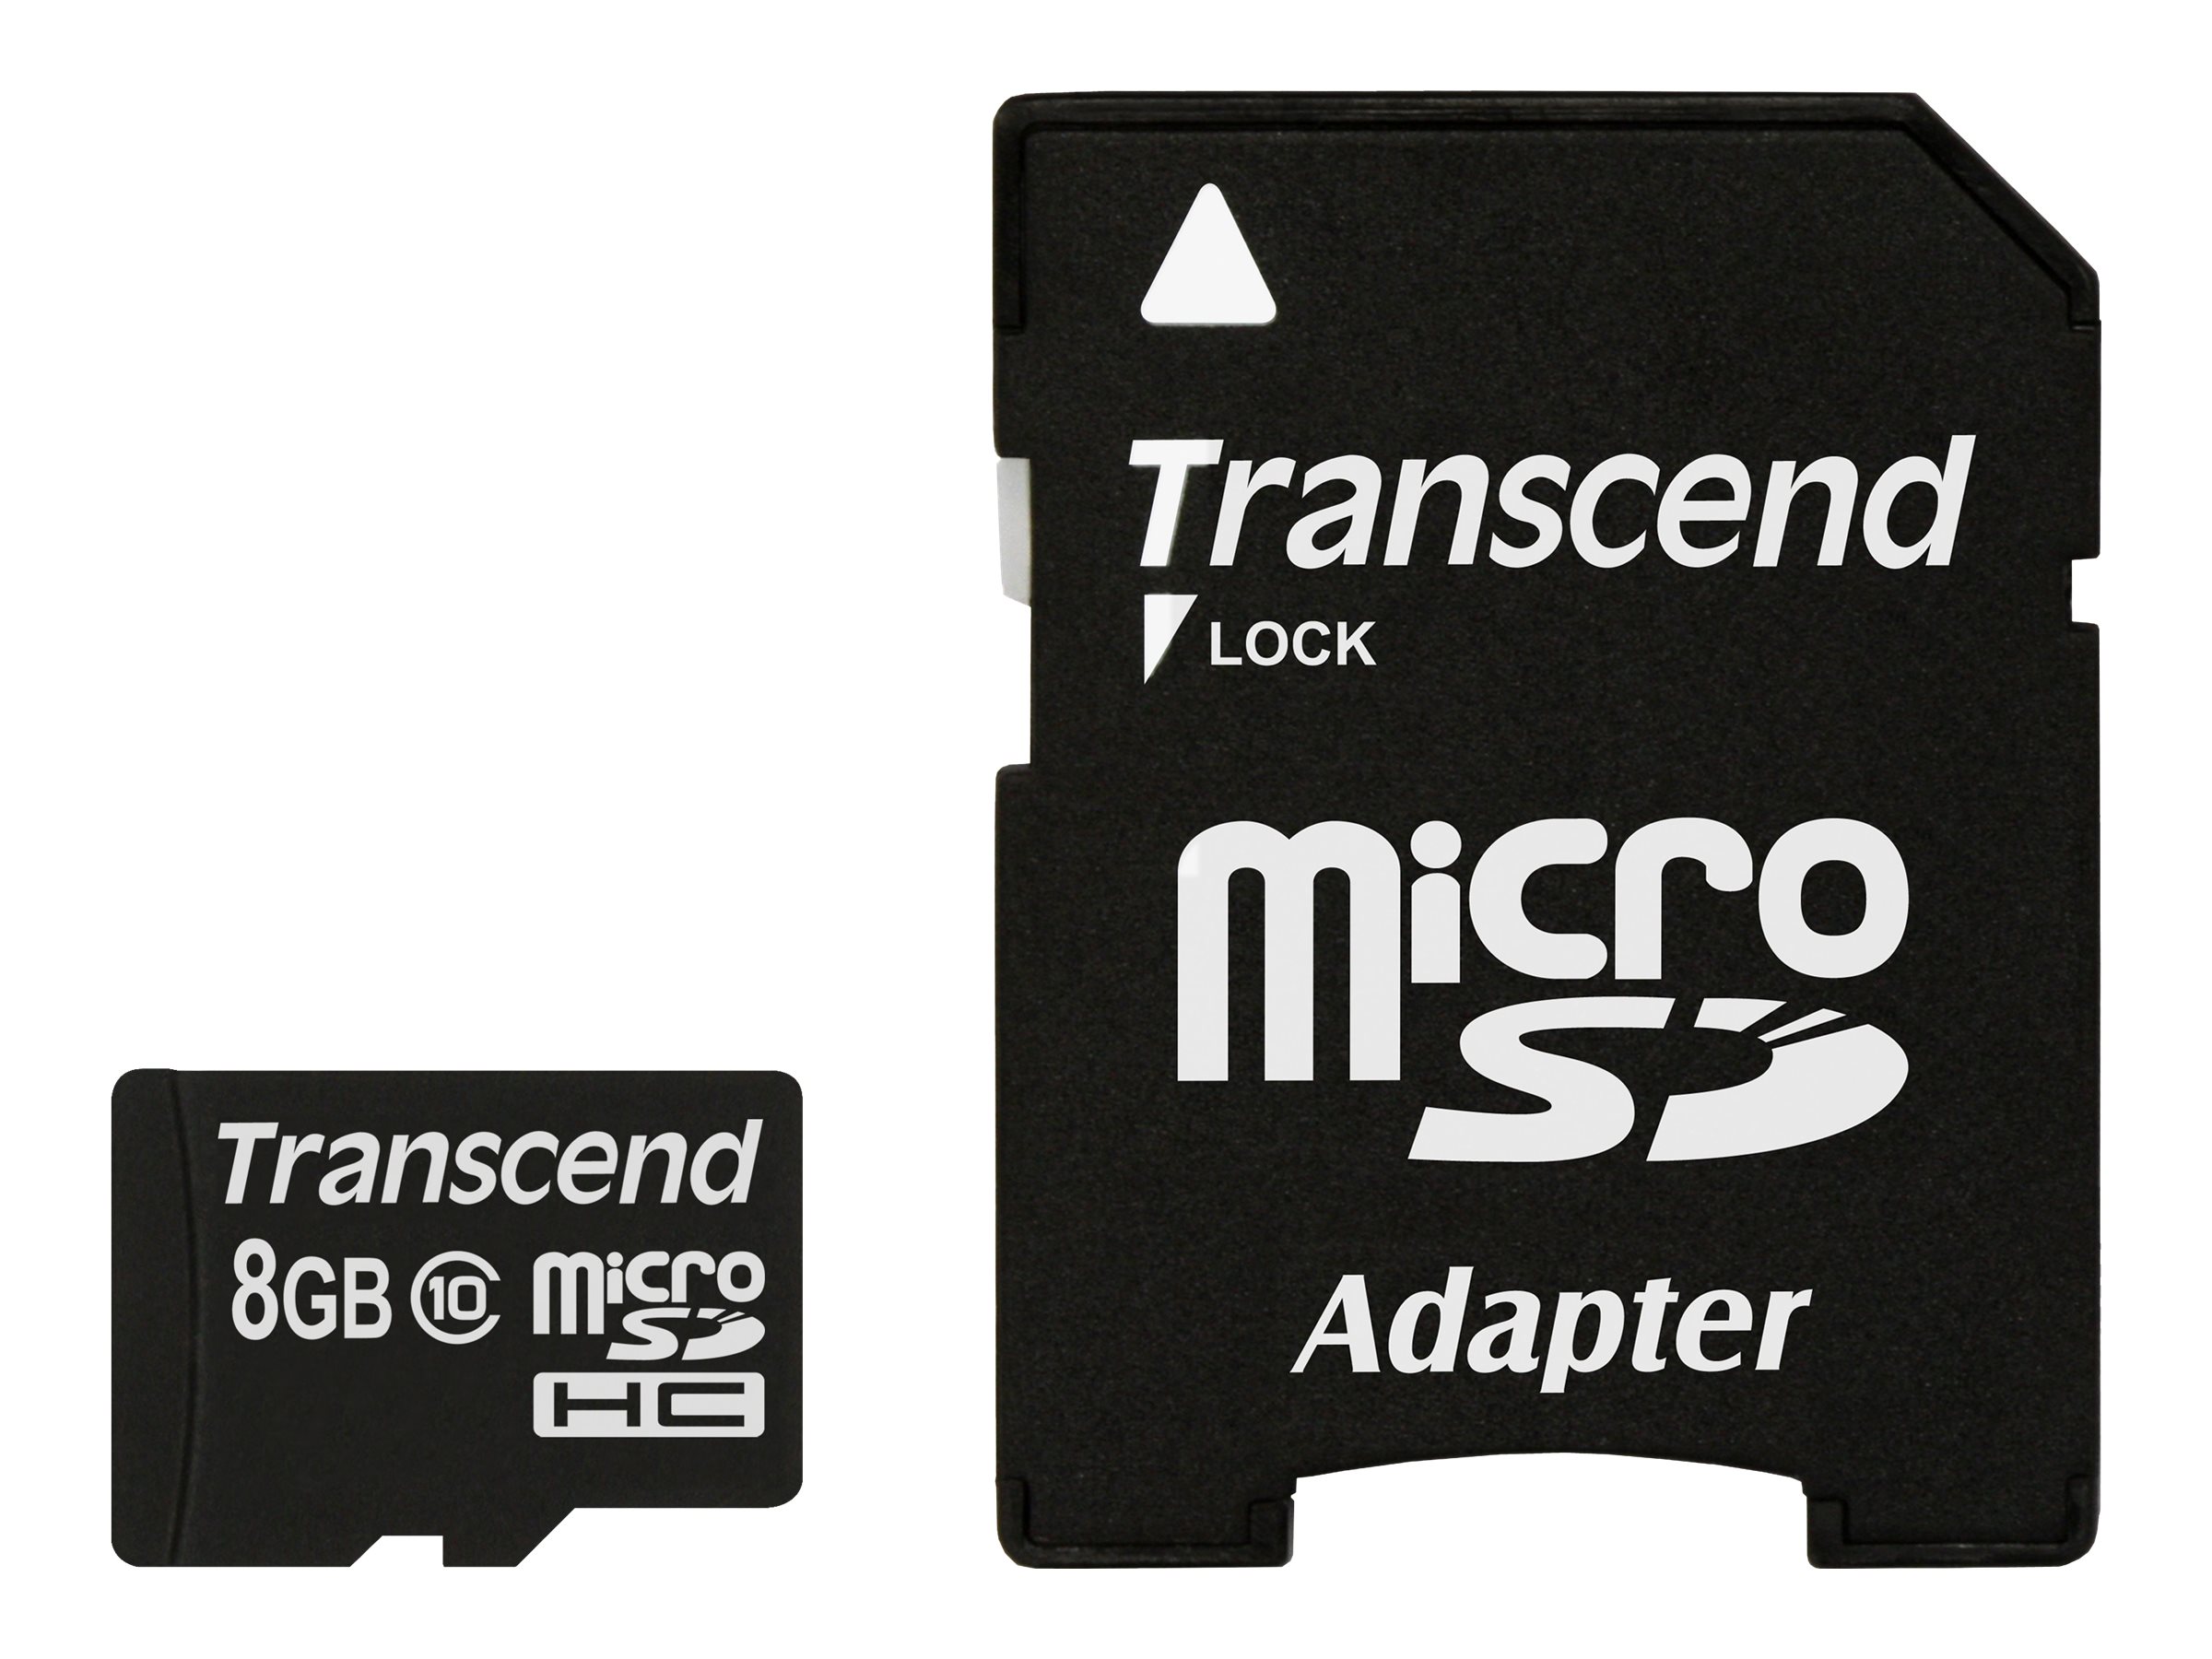 Transcend Premium microSDHC 8GB